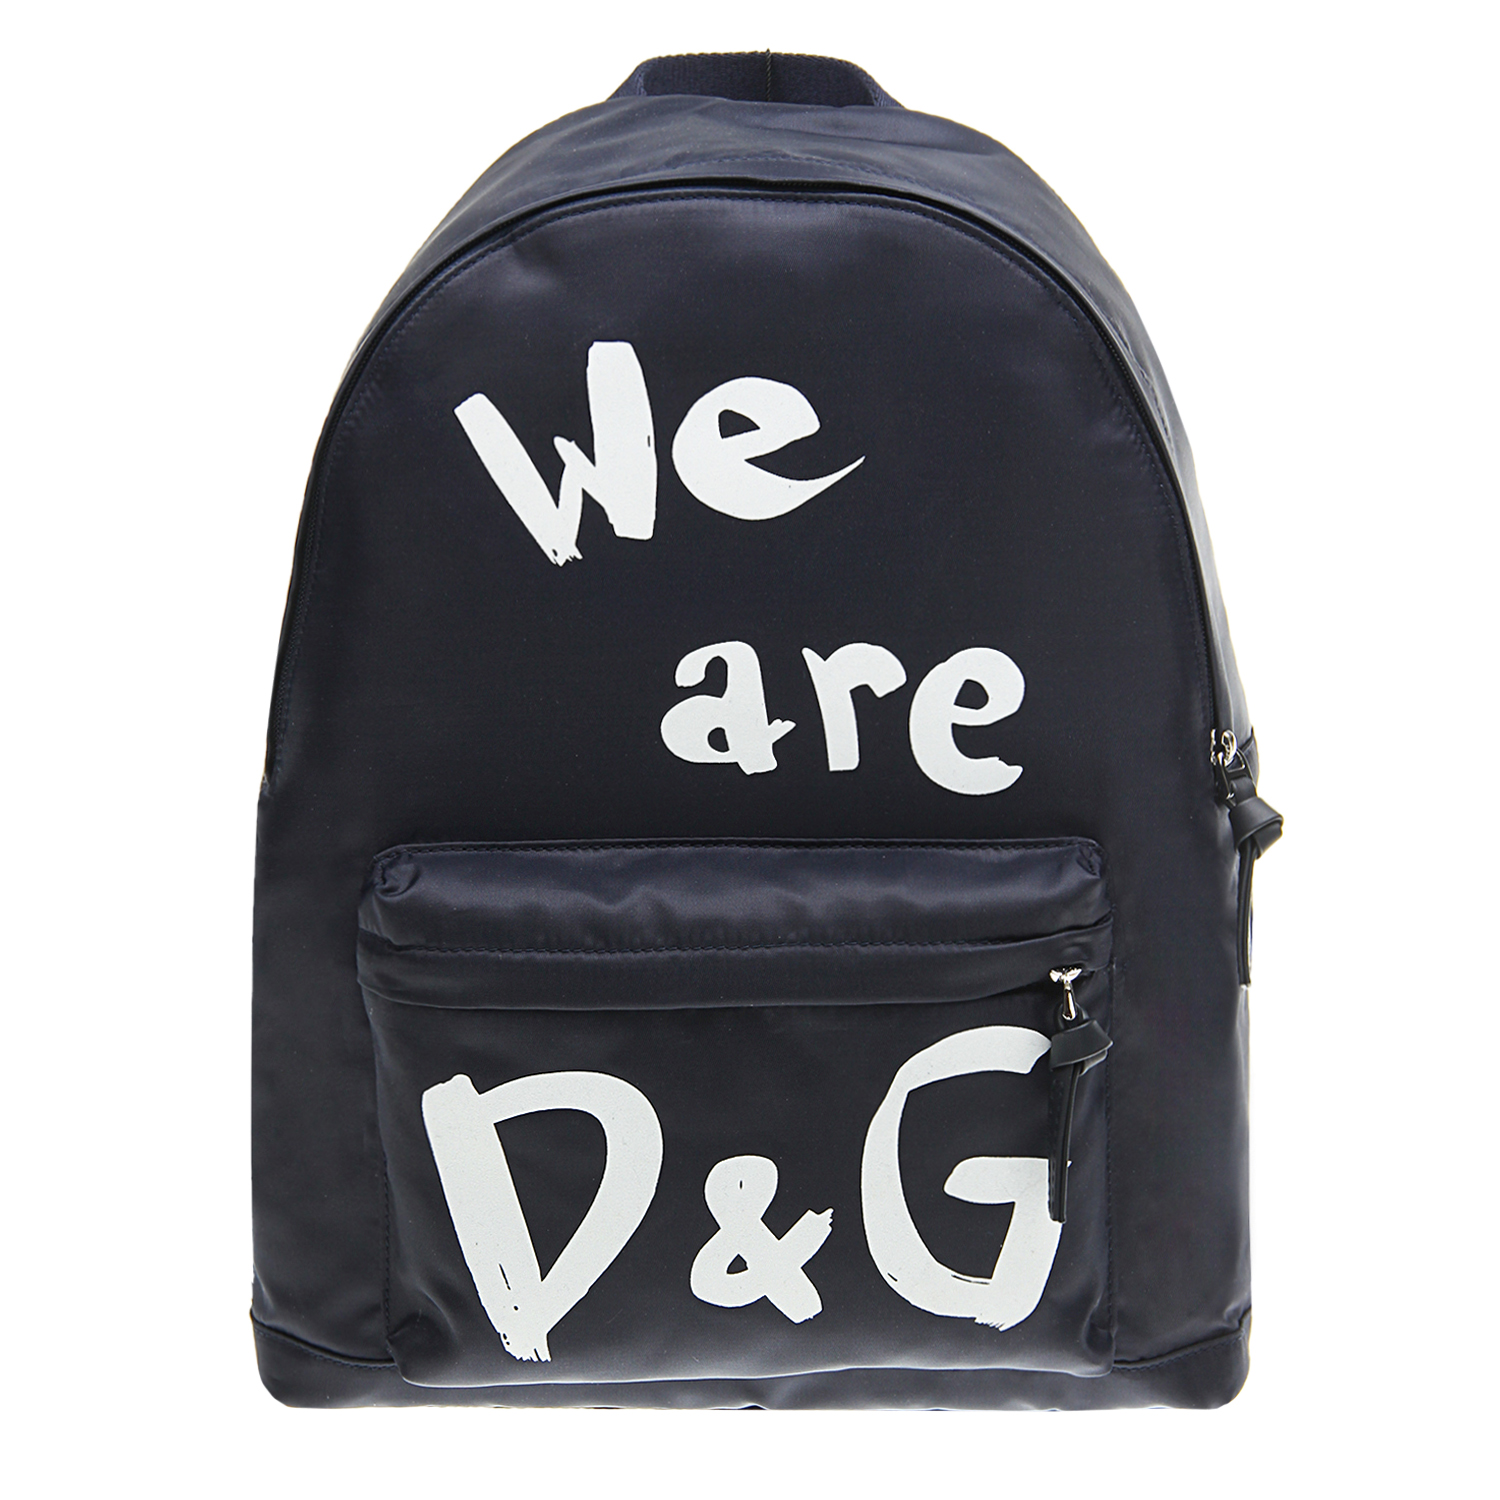 Синий рюкзак "We are DG" 35x28x18 см Dolce&Gabbana детский, размер unica